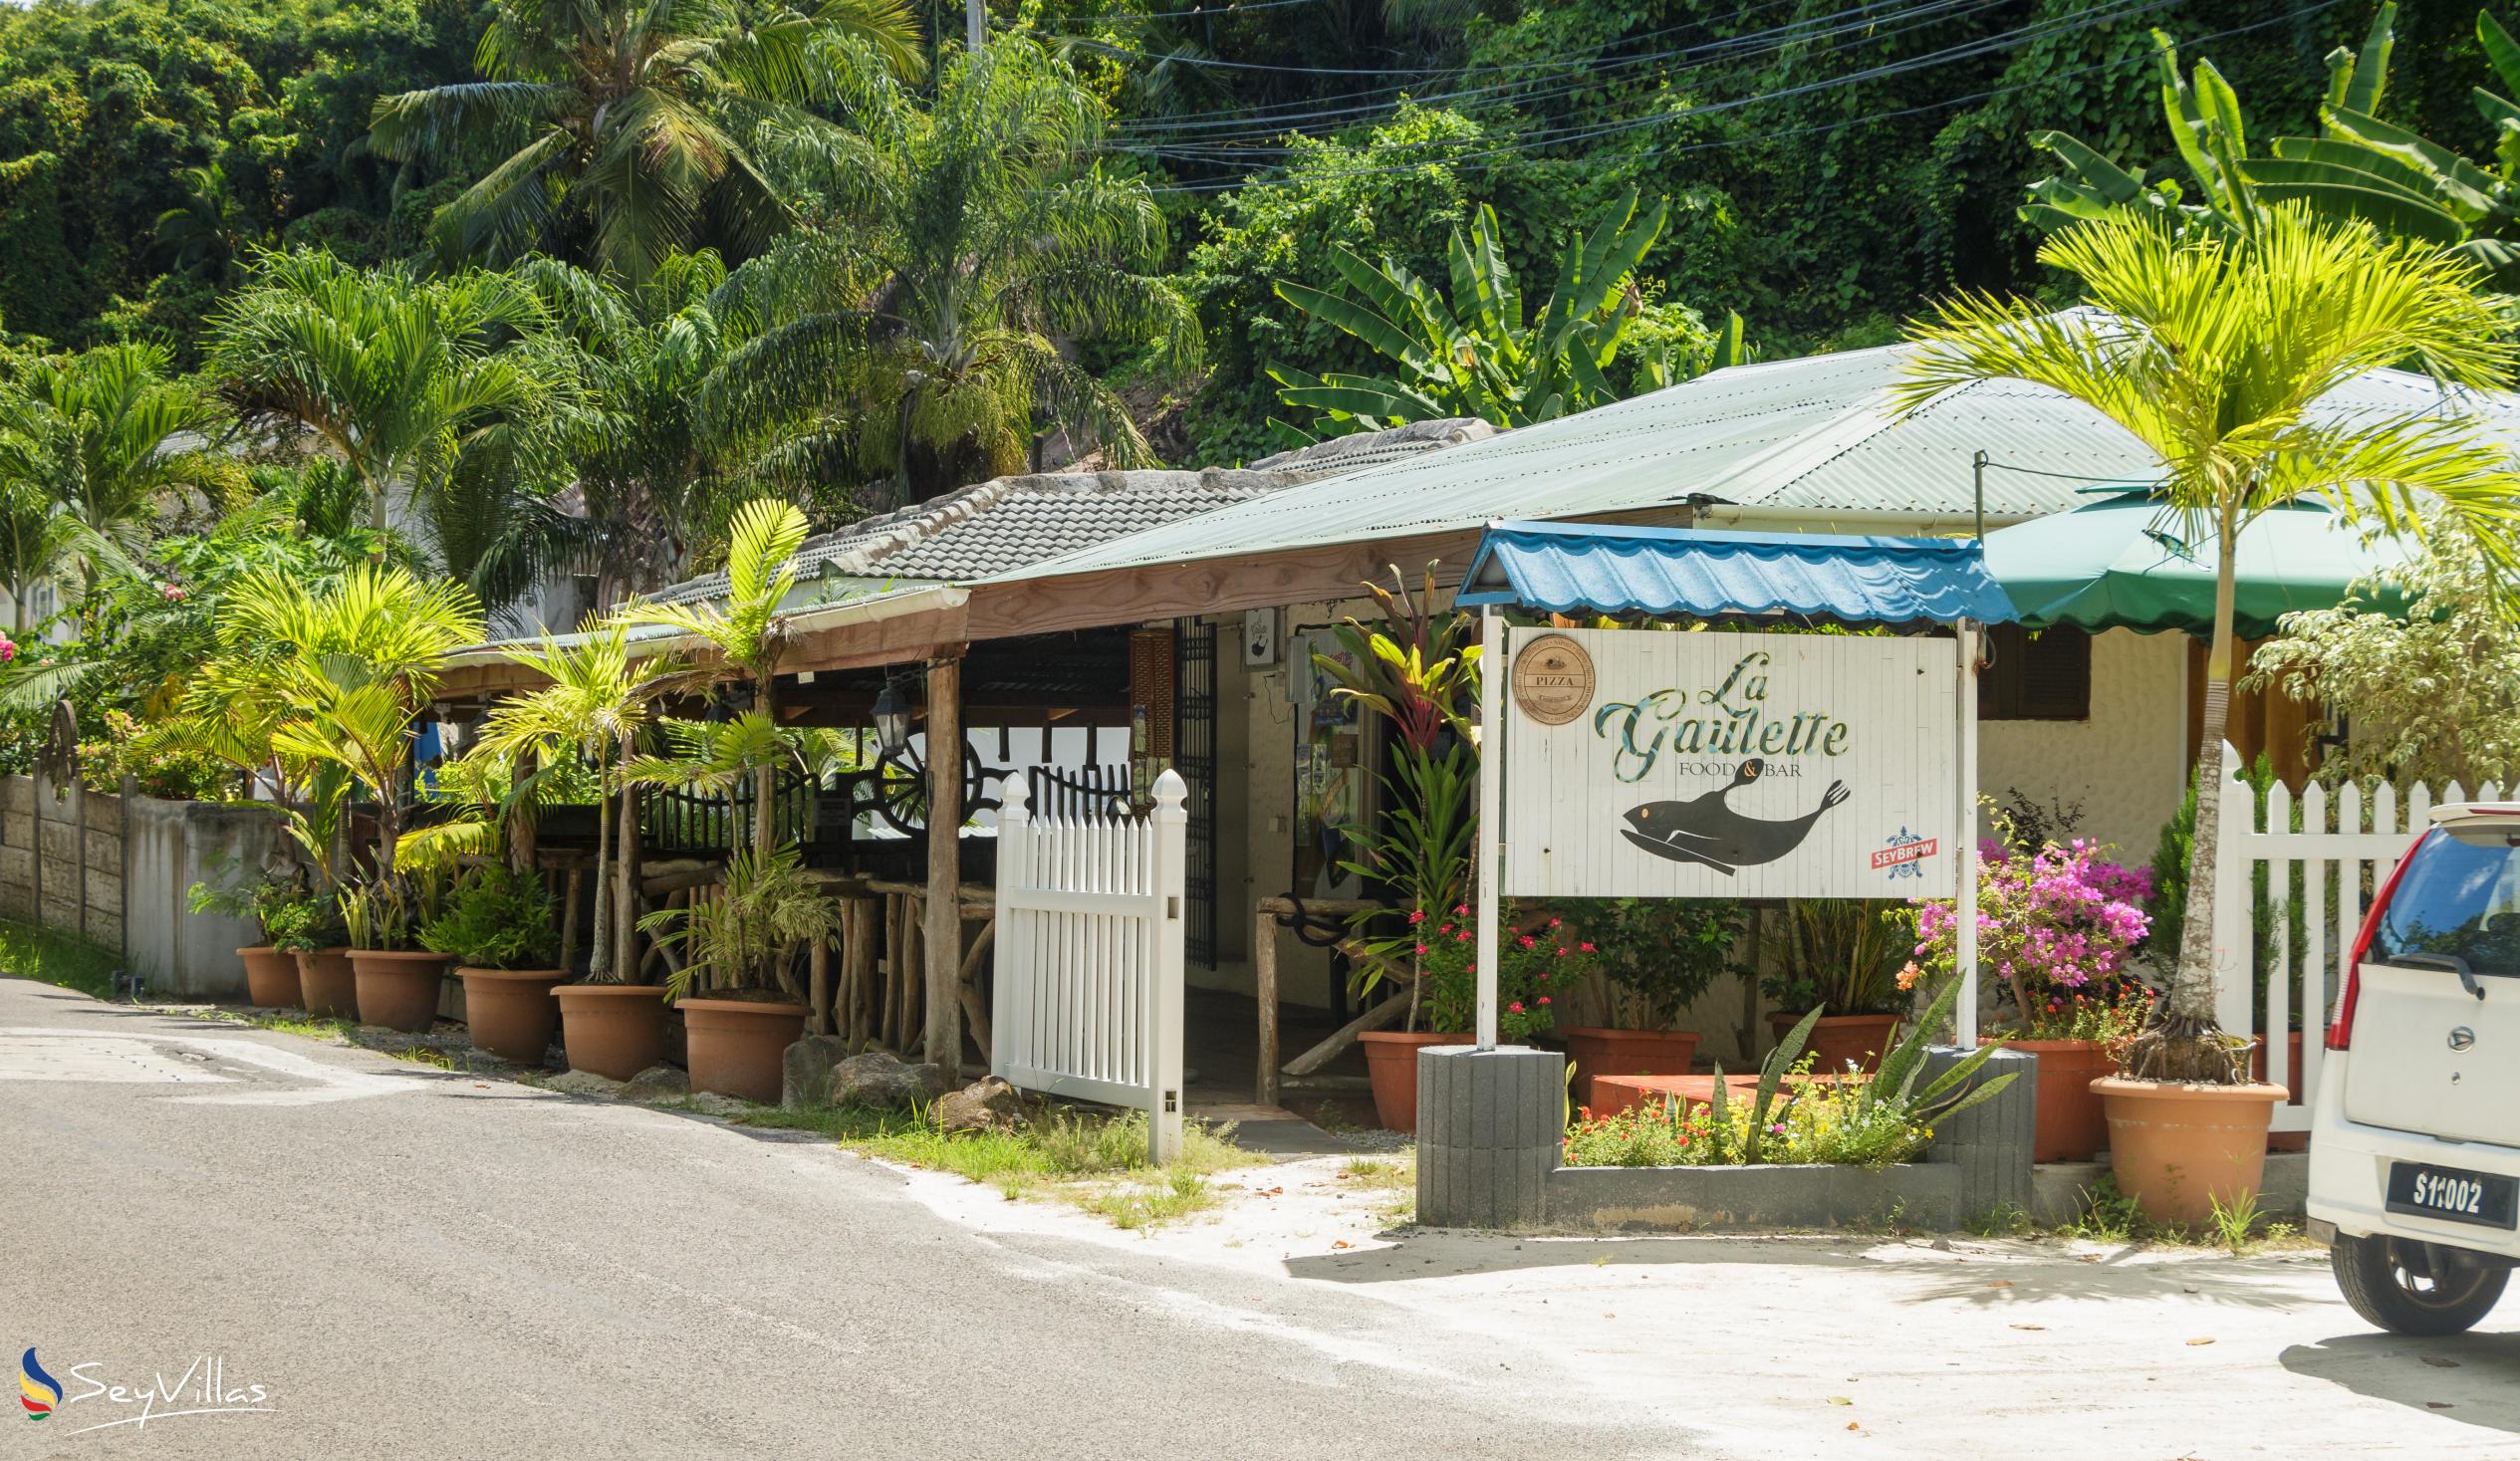 Foto 58: Lazare Picault Hotel - Posizione - Mahé (Seychelles)